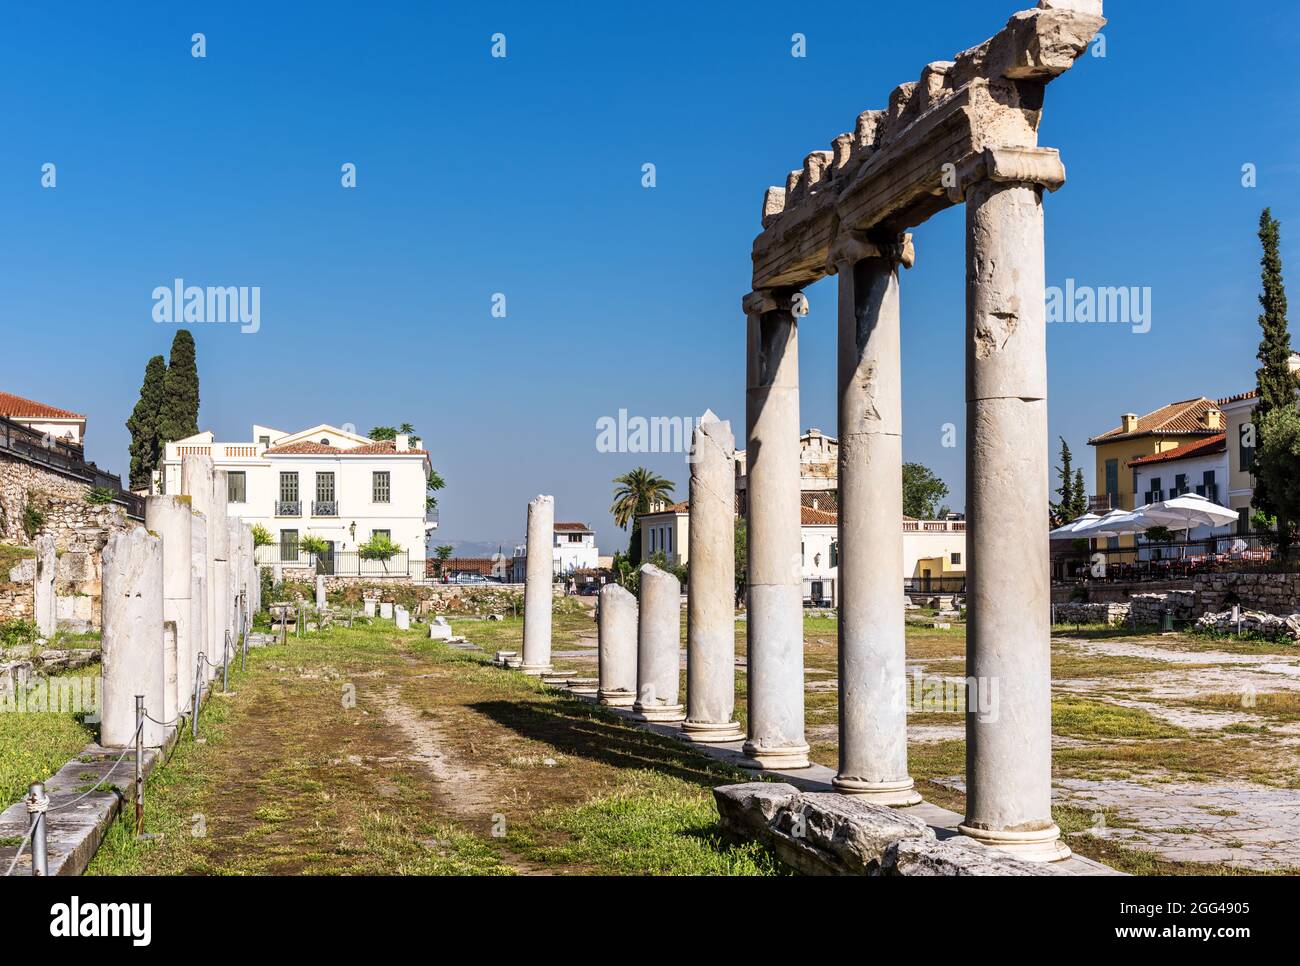 Antiche rovine greche in Agora romana, Atene, Grecia. E' un'attrazione turistica di Atene. Vista dei resti di edifici classici nel centro di Atene i Foto Stock